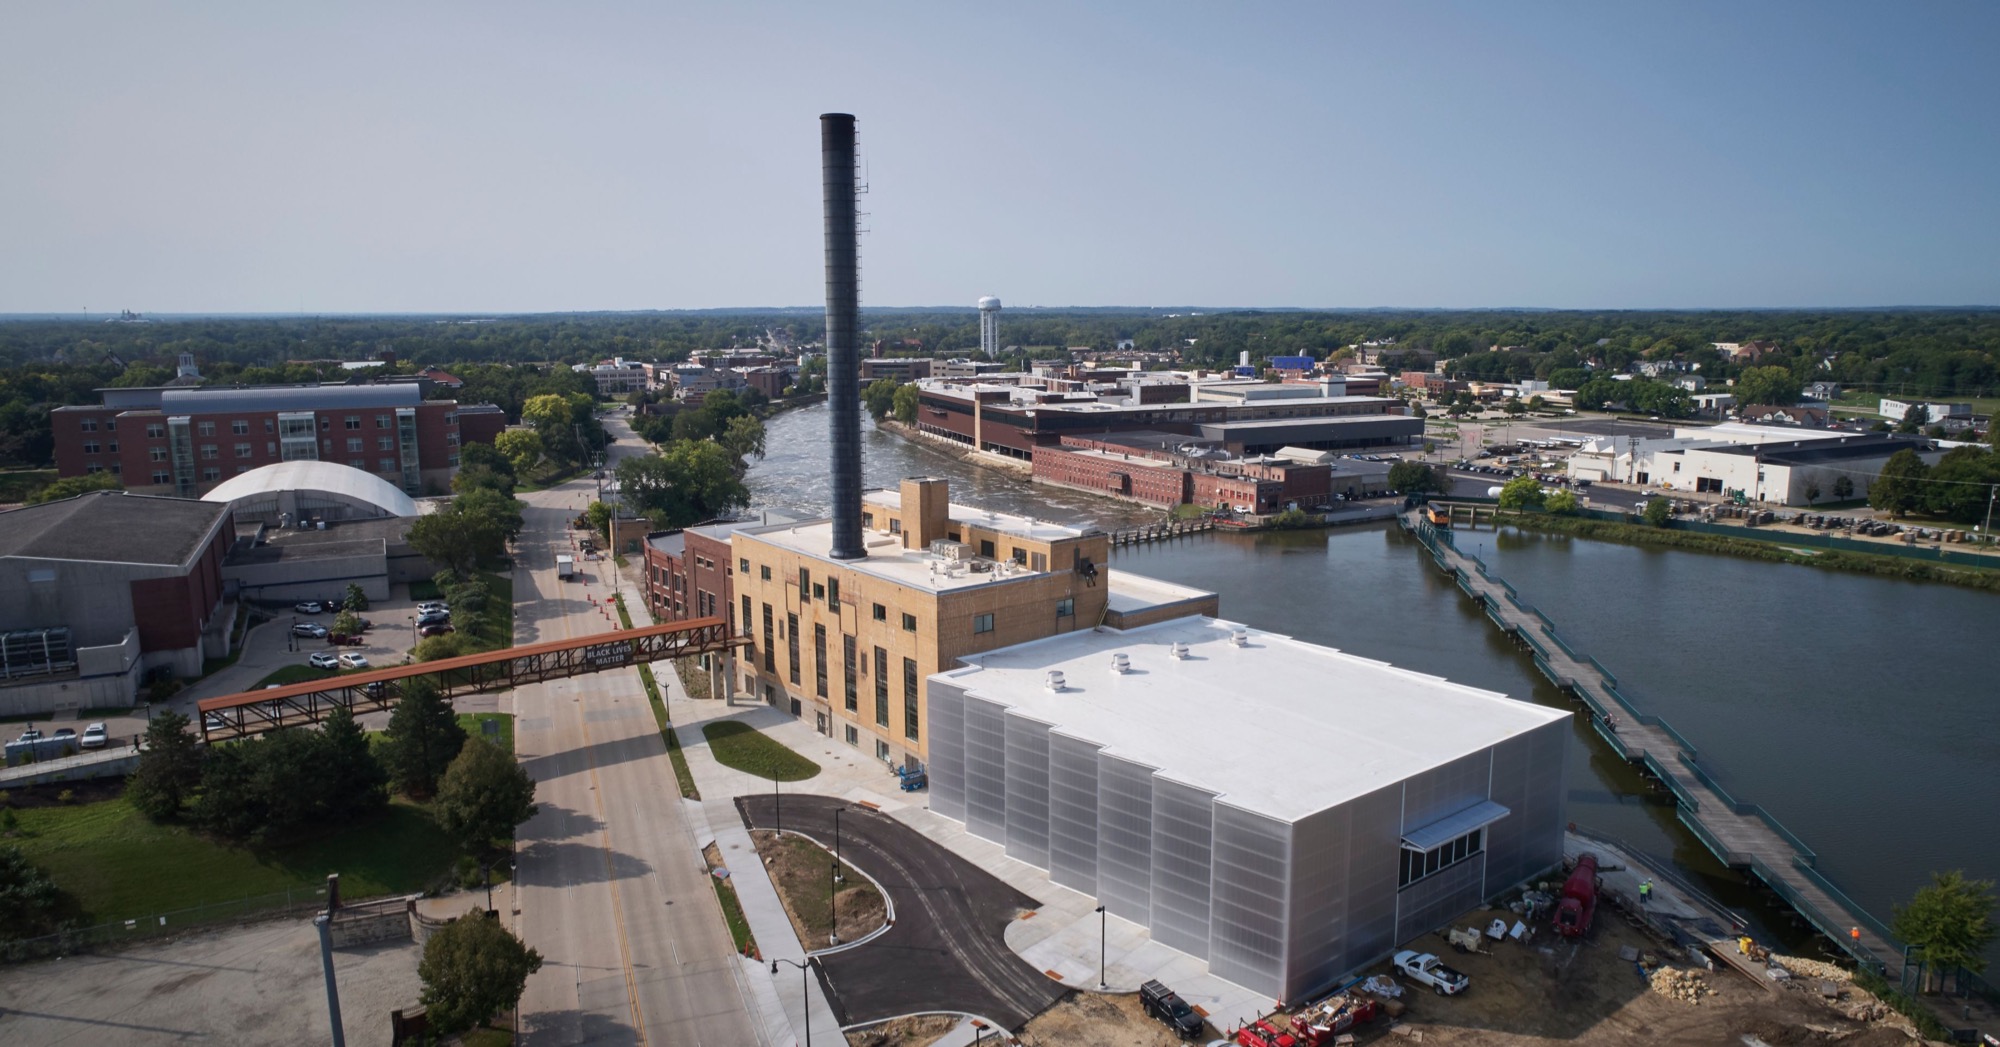 Průmyslový Beloit ve Wisconsinu se ukázkově vypořádal s brownfieldem